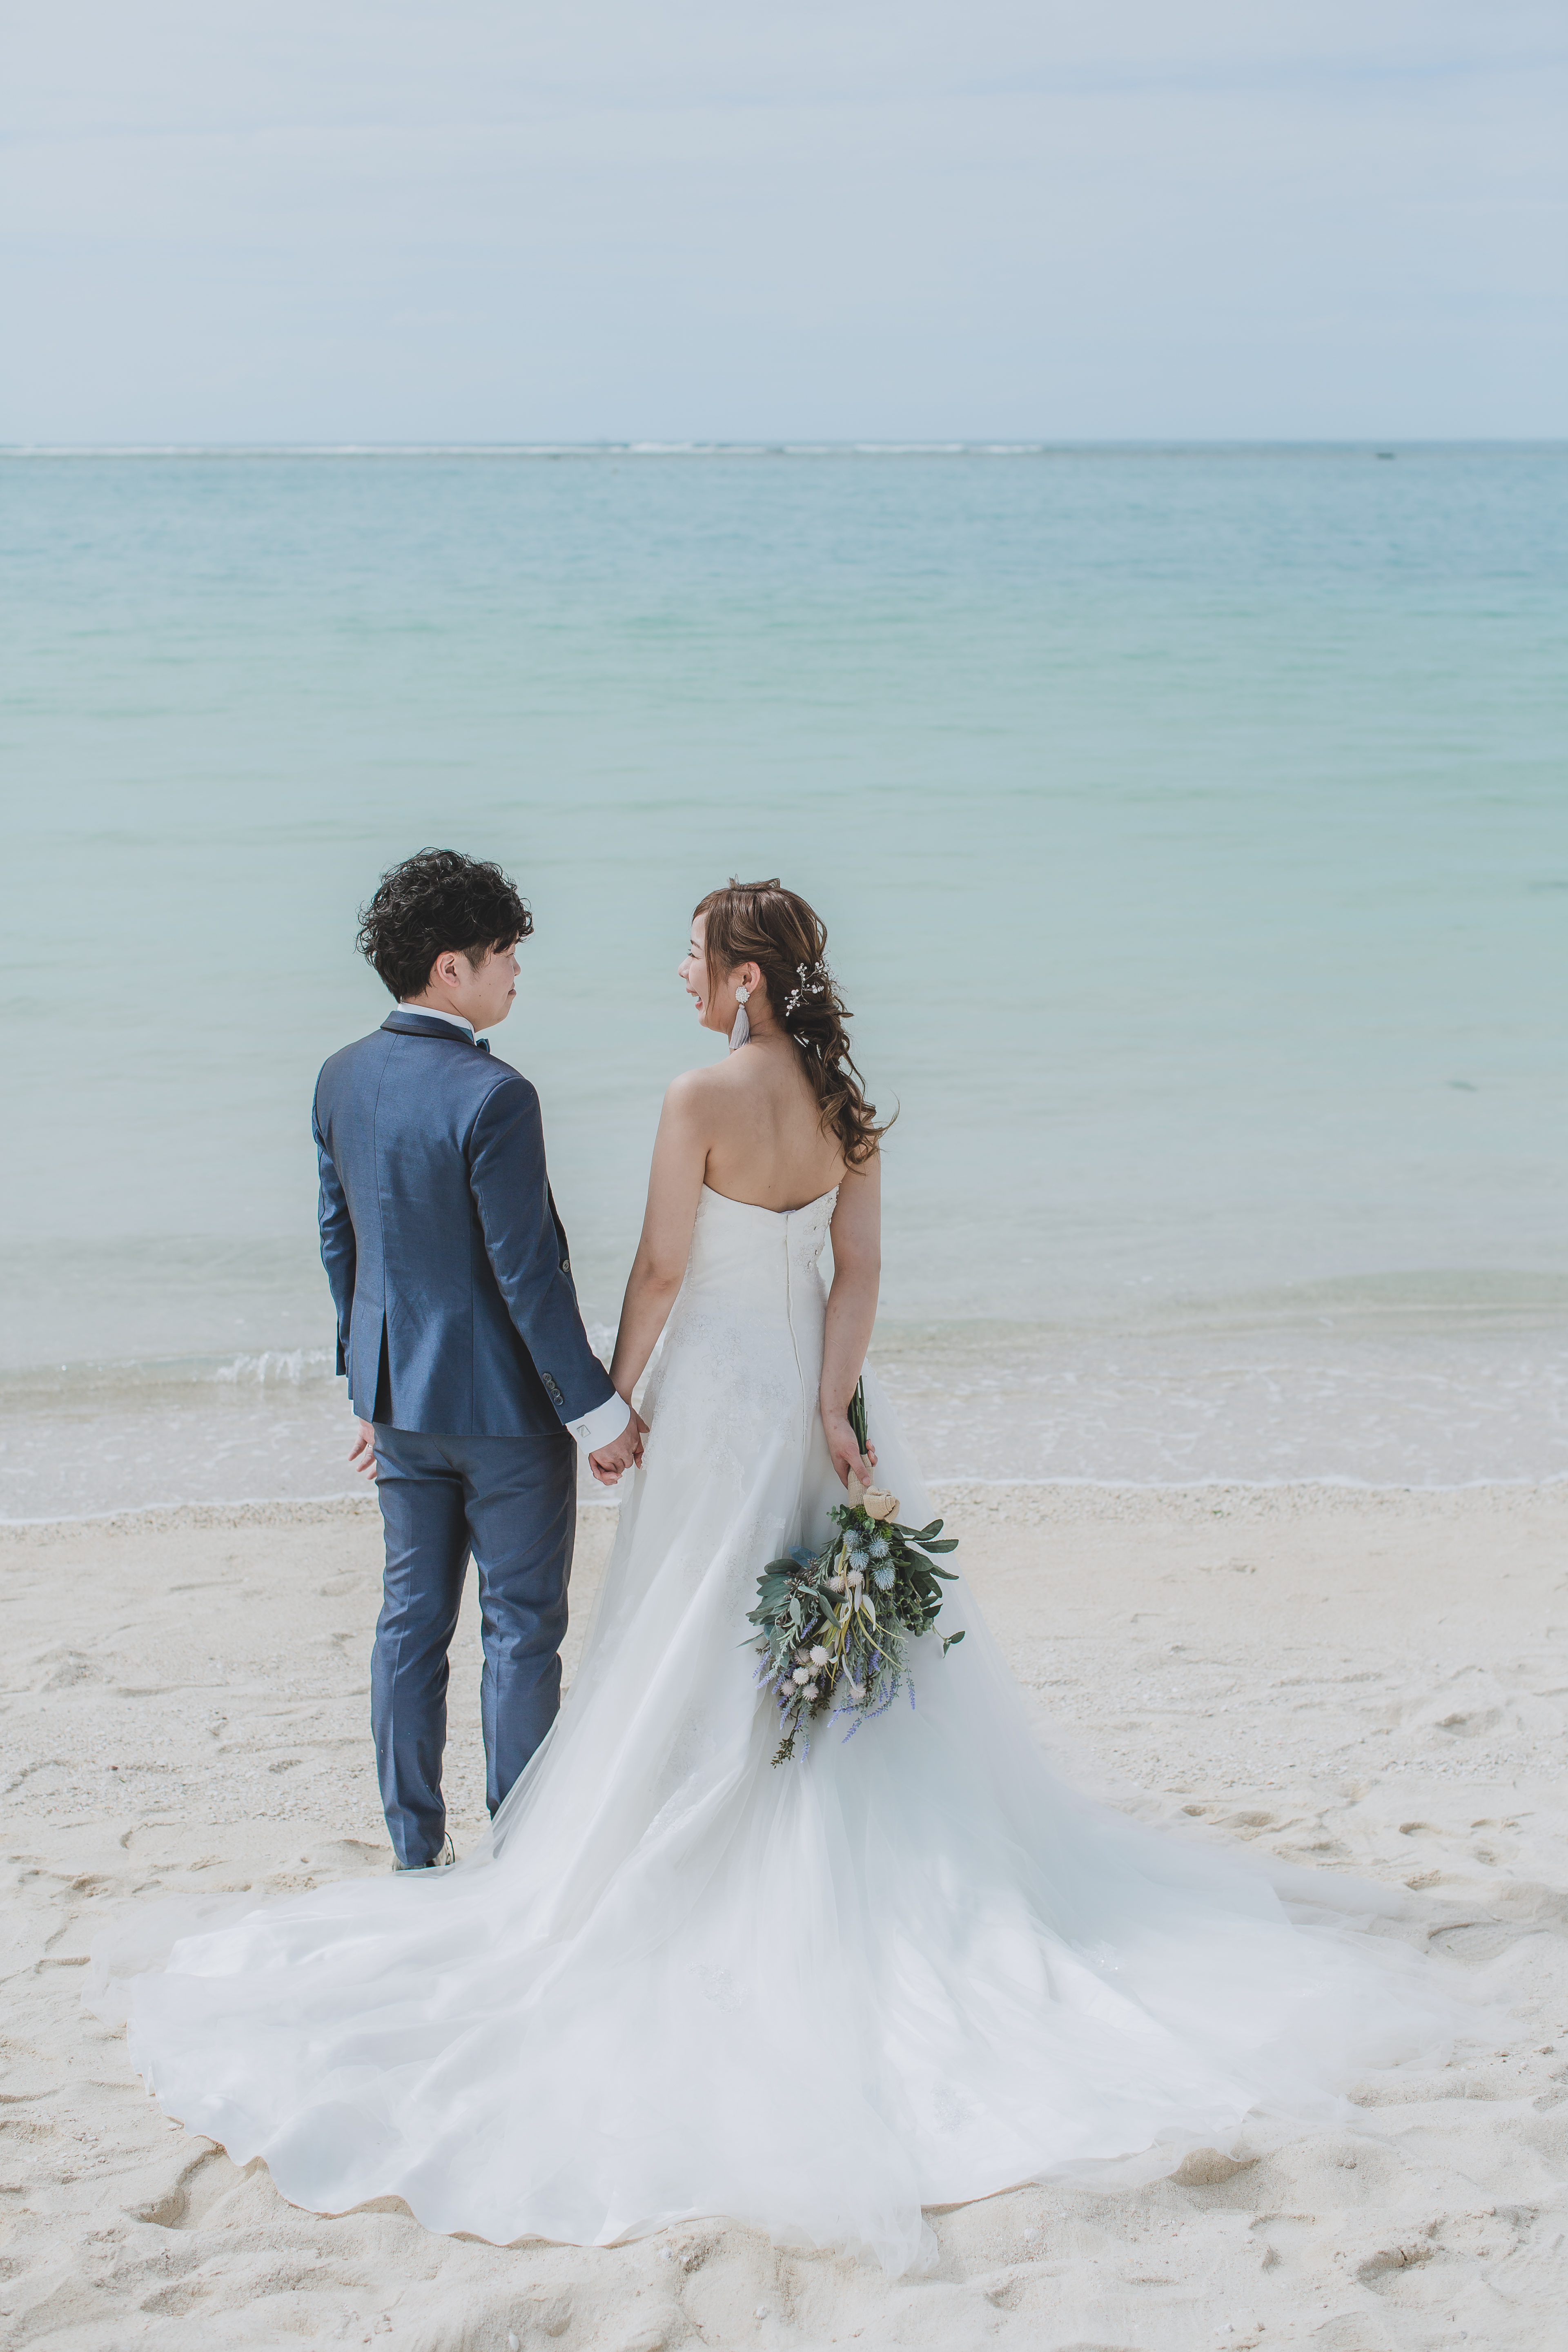 沖縄フォトウェディング チャペル ビーチ撮影 2月19日 フォトウェディング 結婚式の前撮りならクリエイティブスタジオ